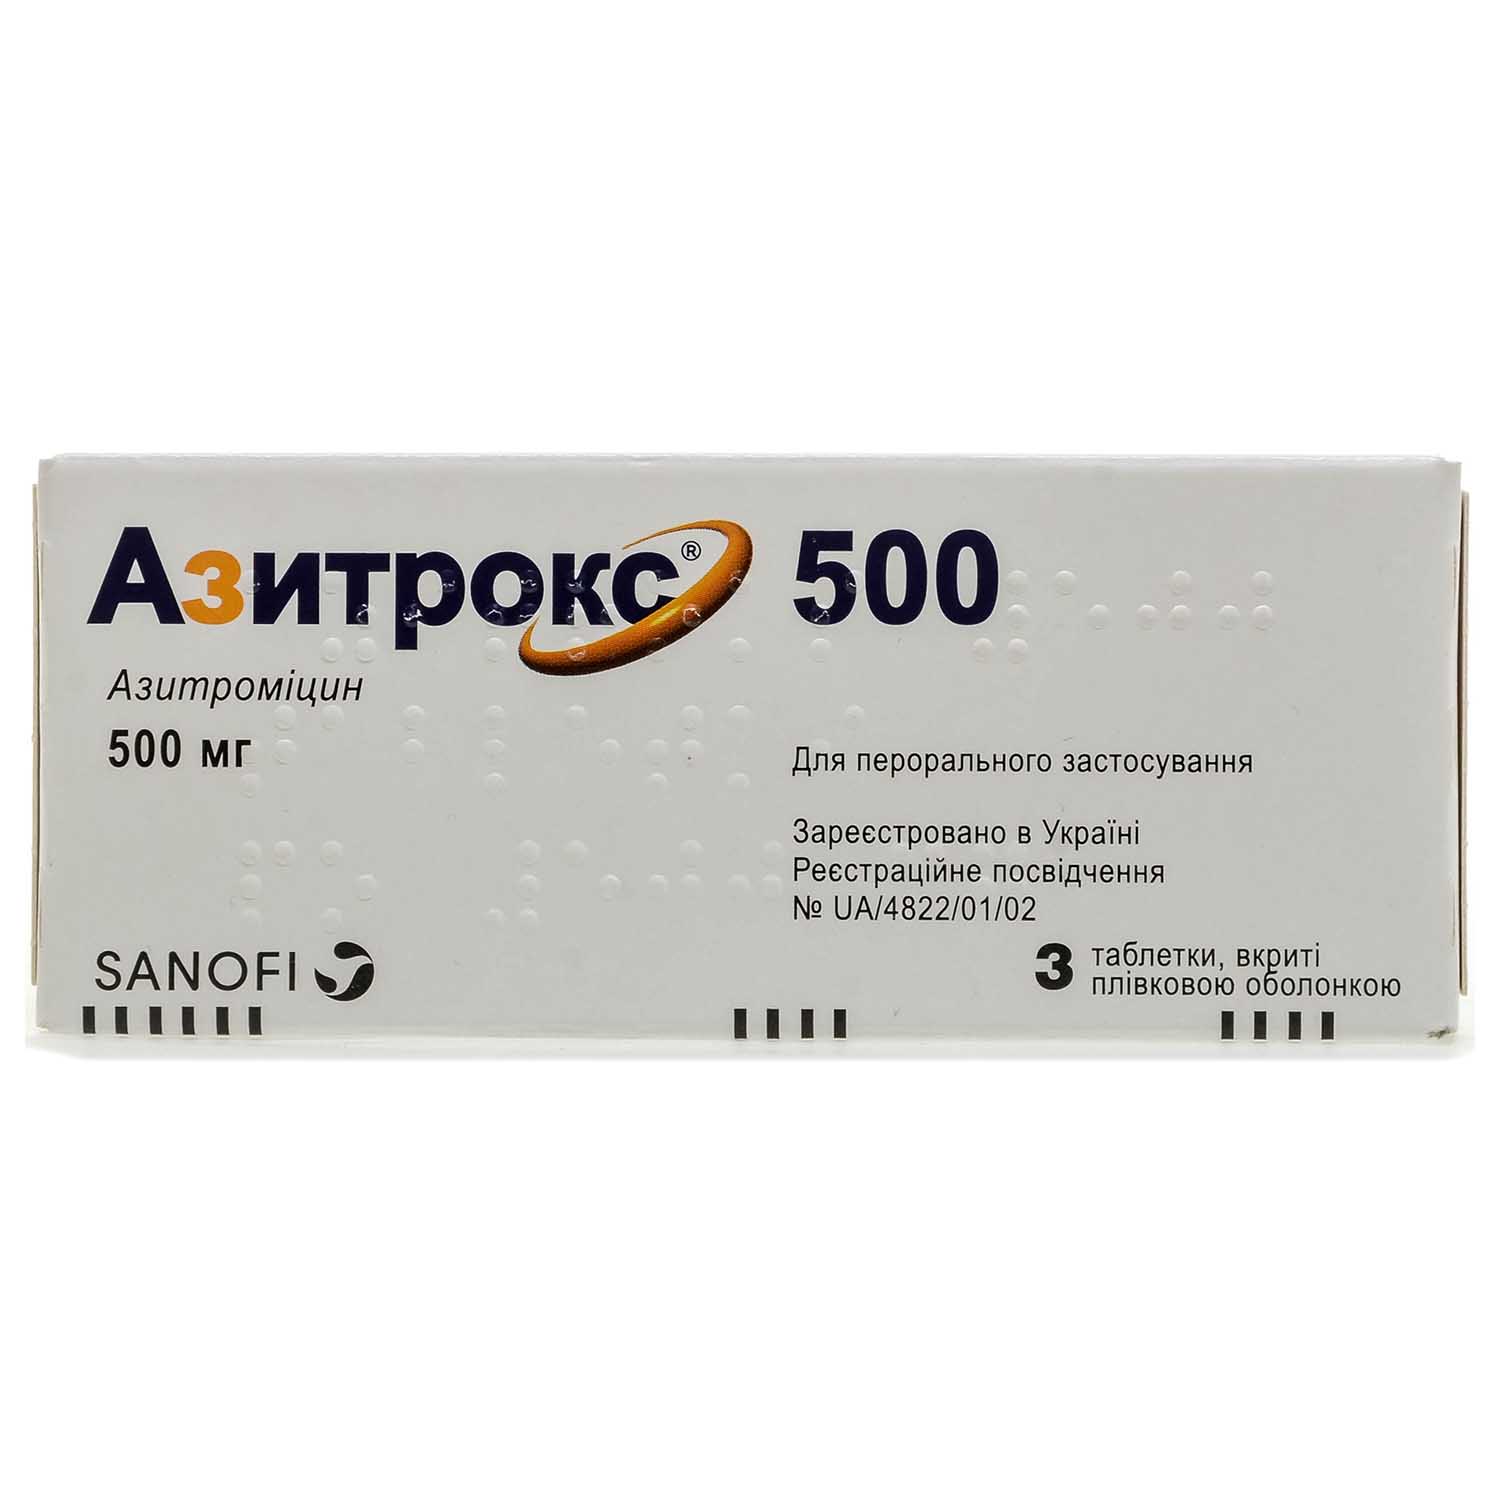 Азитрокс 500. Азитрокс 500 мг Zentiva. Азитрокс дозировка для детей. Аналог Азитрокса.